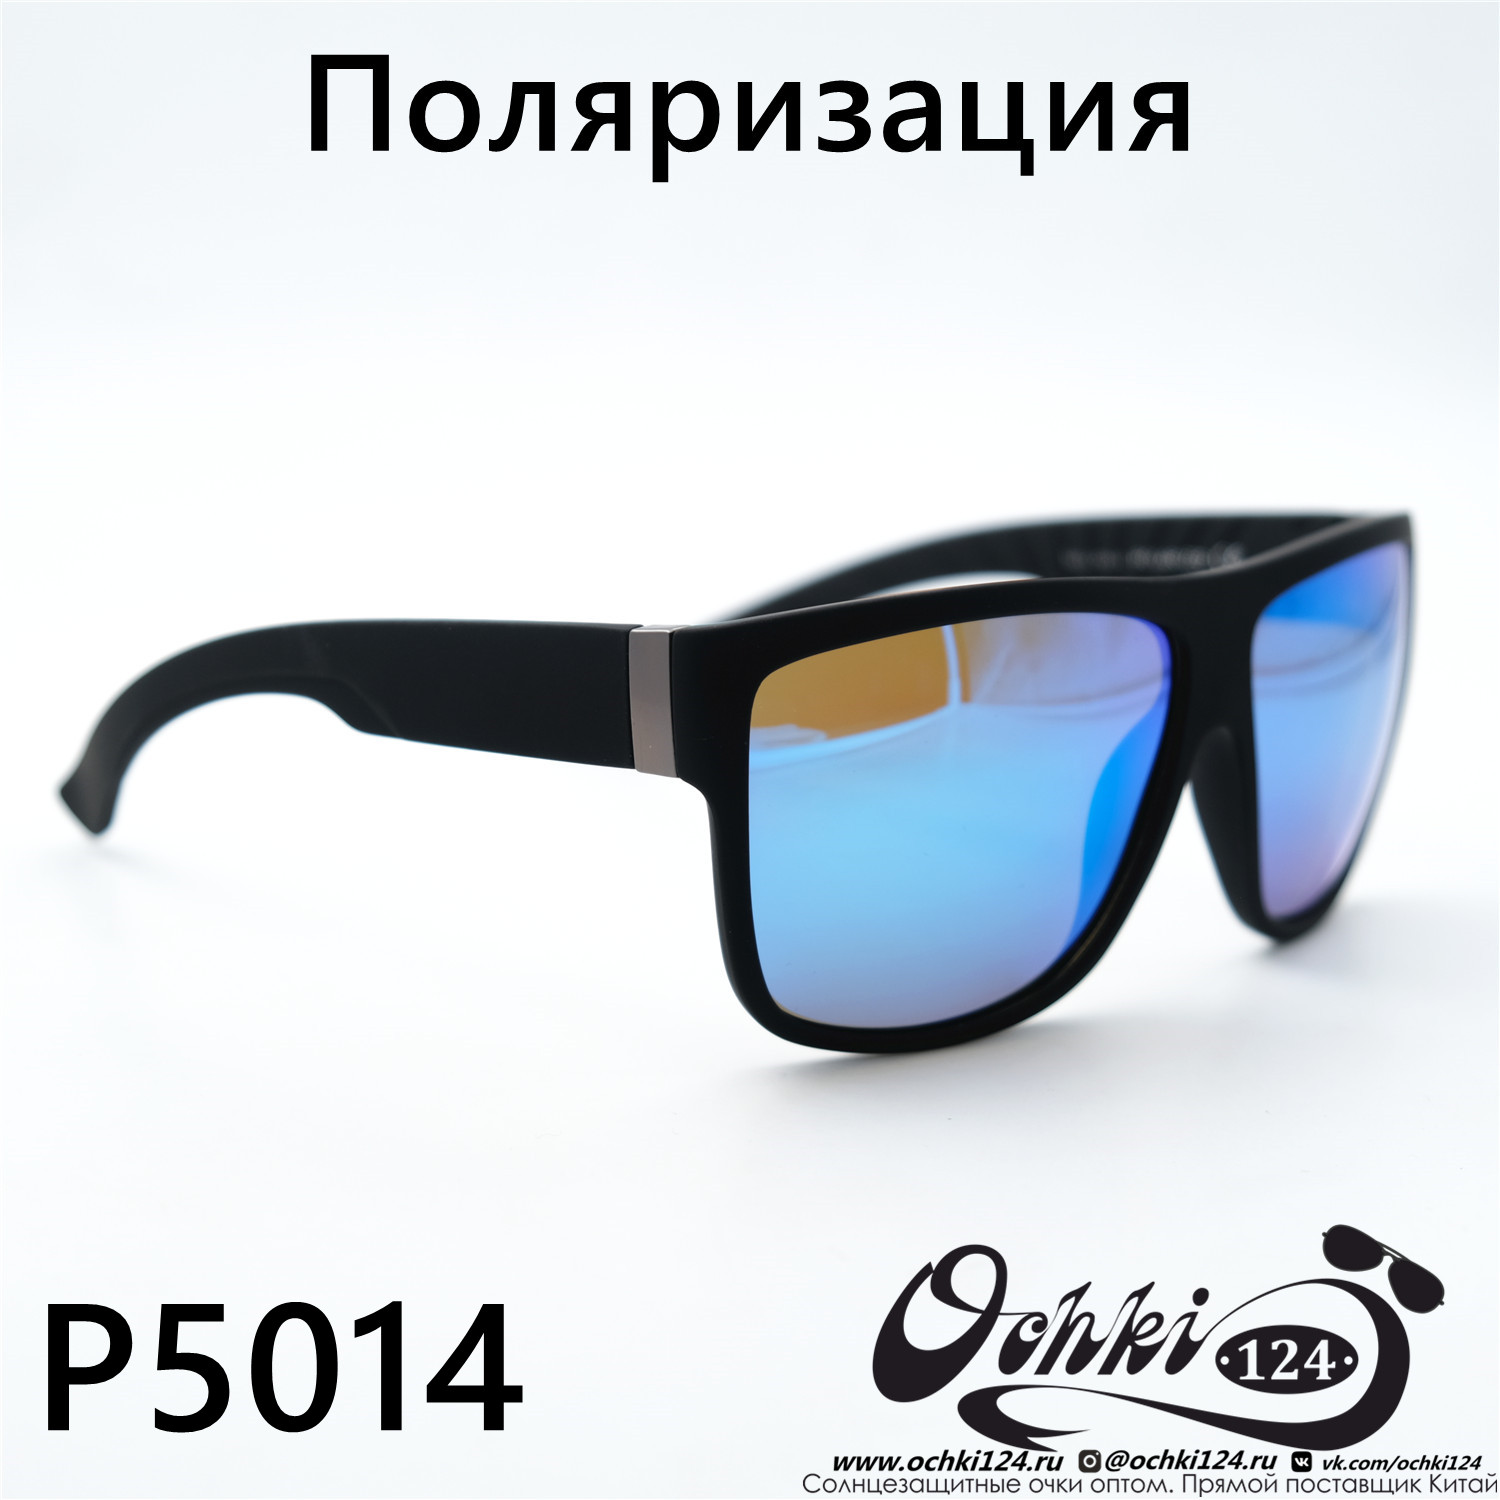  Солнцезащитные очки картинка 2023 Мужские Стандартные Maiersha P5014-C5 